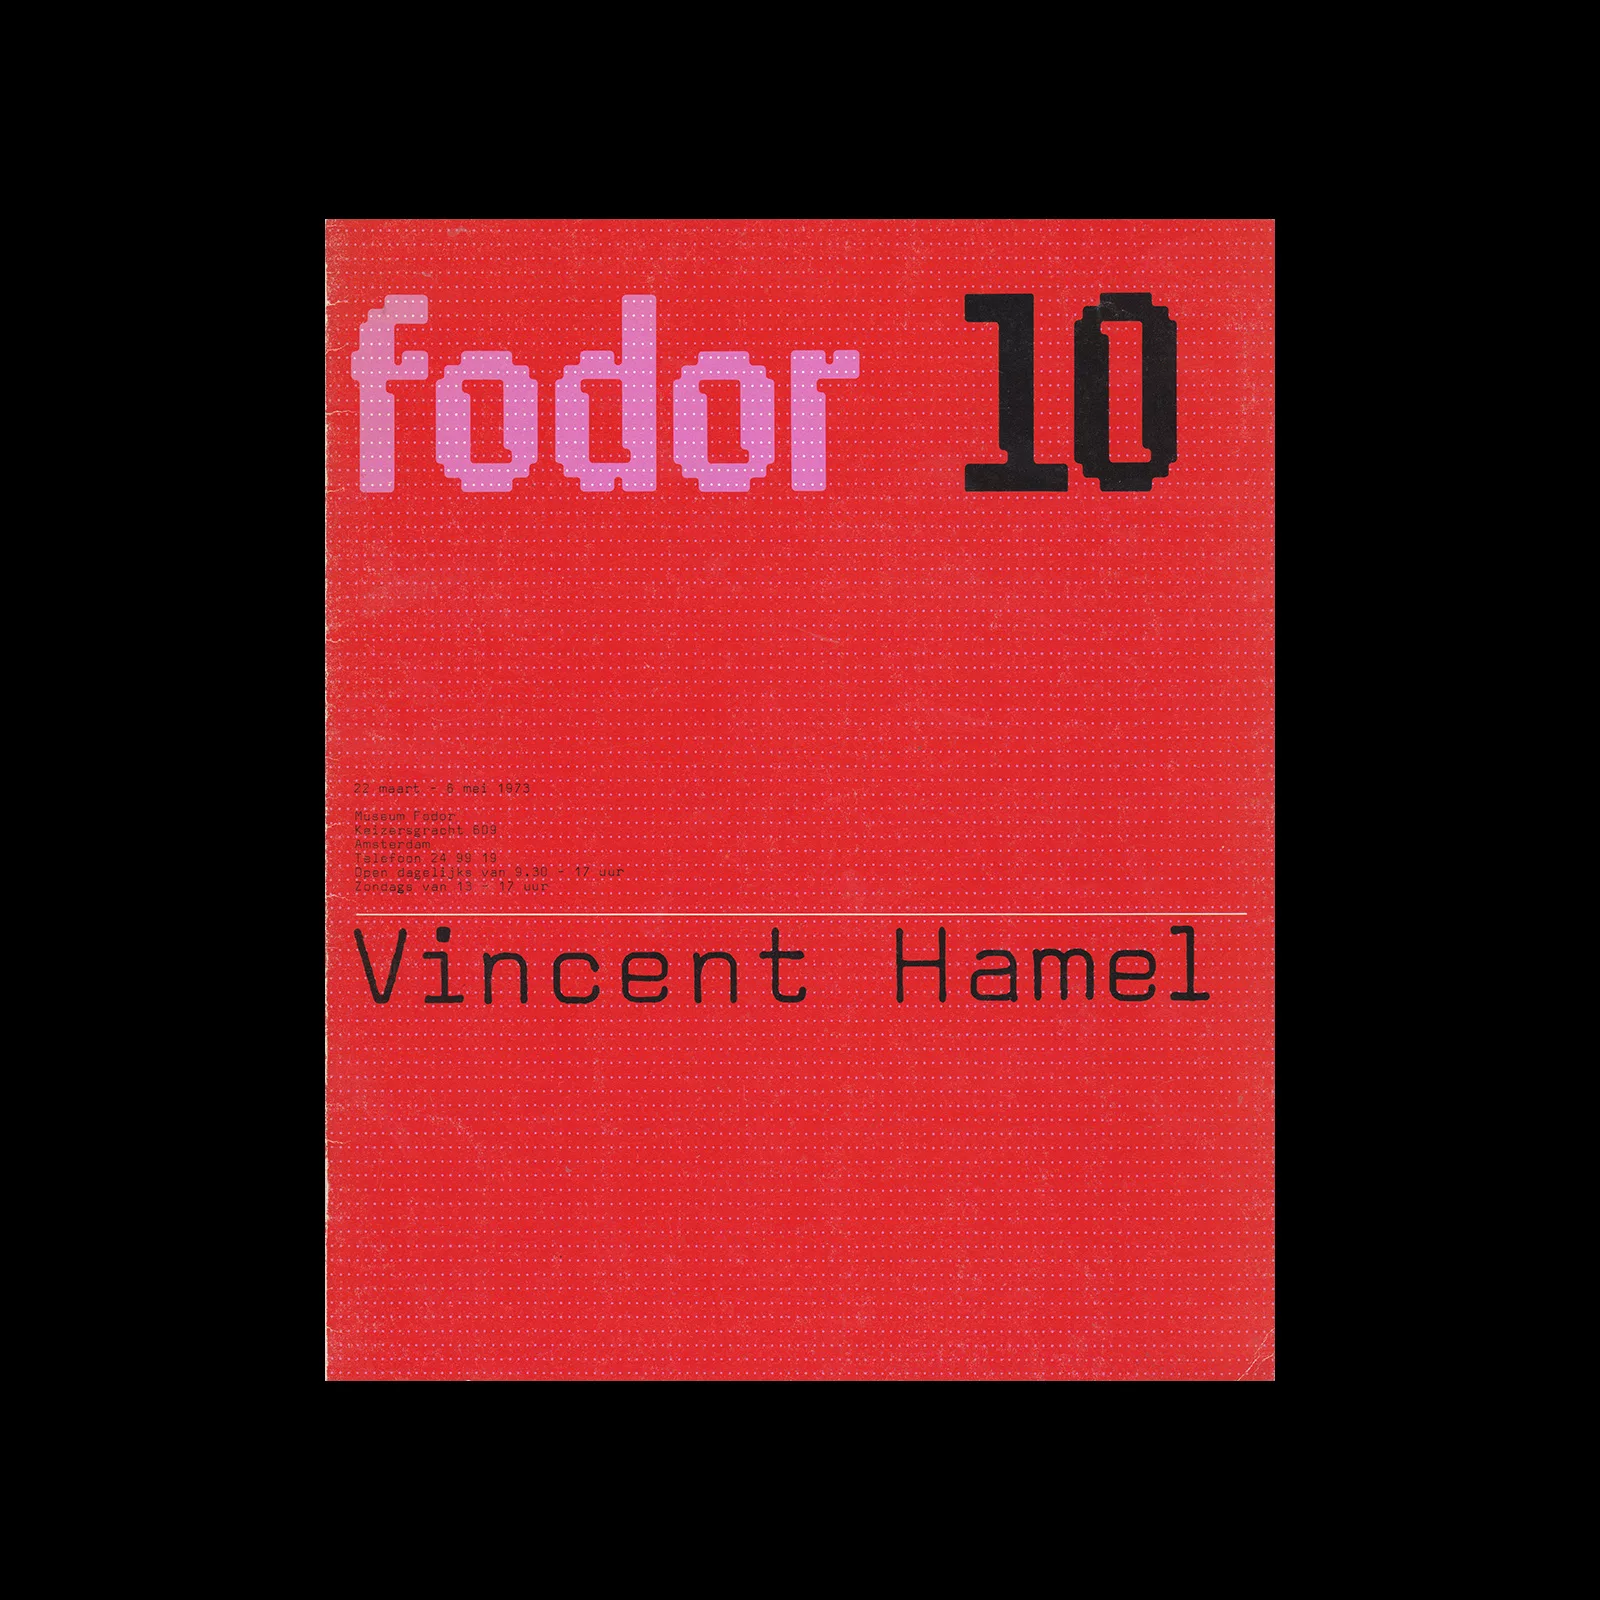 Fodor 10, 1973 - Vincent Hamel. Designed by Wim Crouwel and Dapne Duijvelshoff (Total Design).